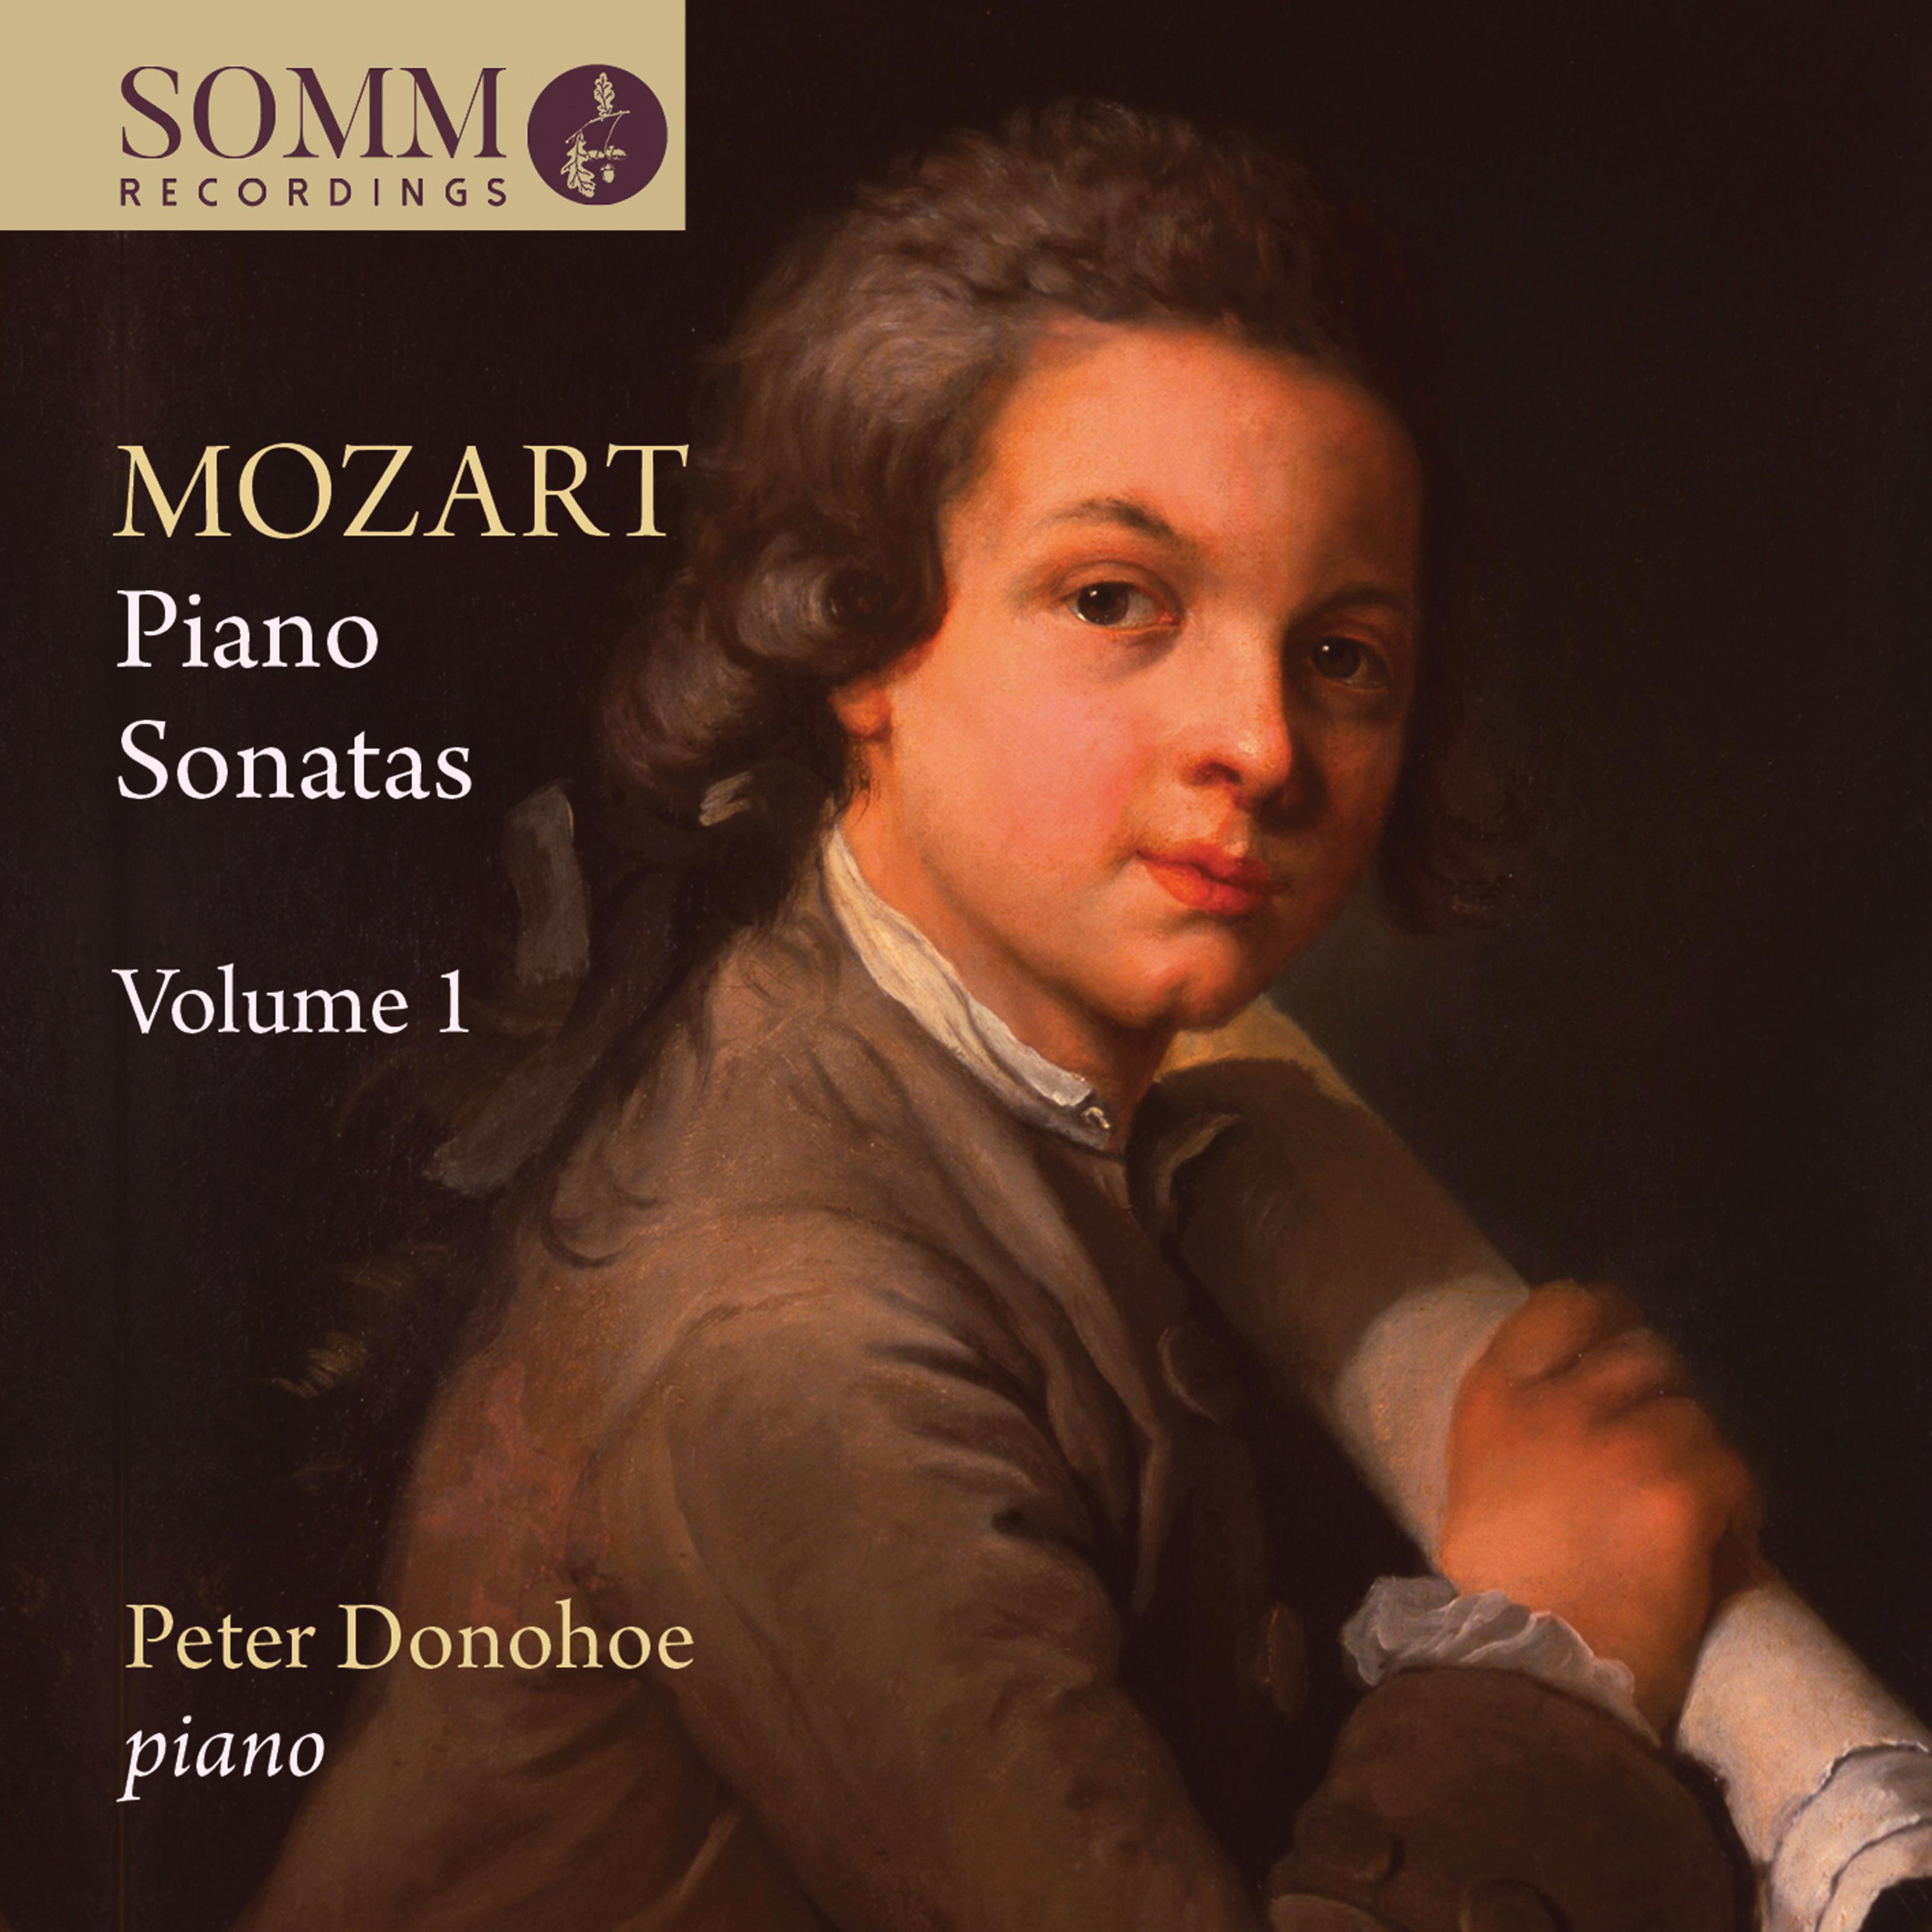 Piano Sonata No. 6 in D Major, K. 284 " Dü rnitz": III. Tema con variazione